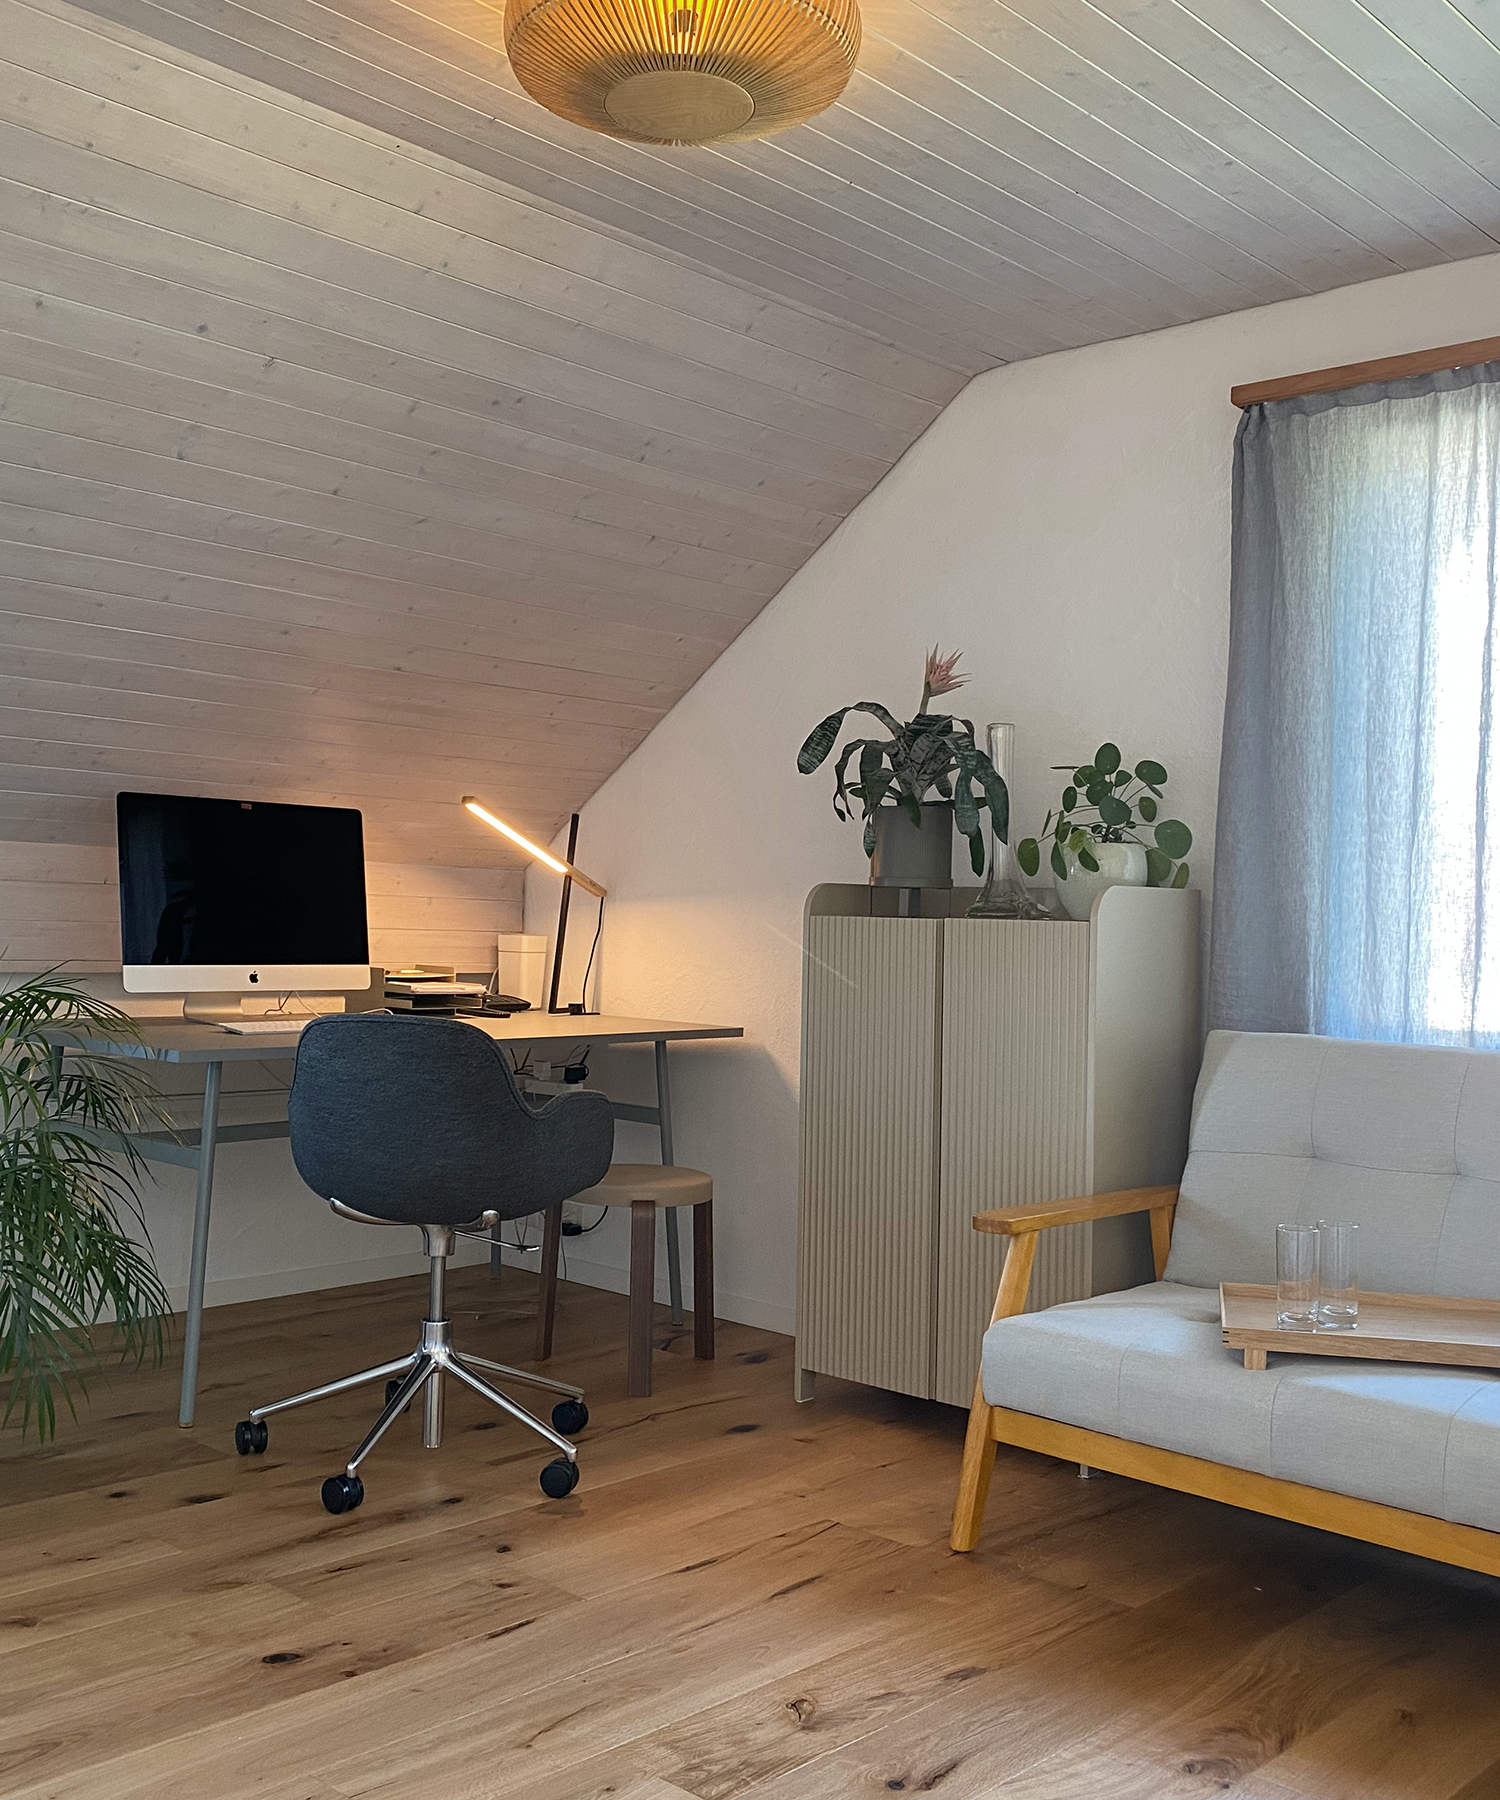 Homeoffice mit modernem Mobiliar von Normann Copenhagen und Ferm Living